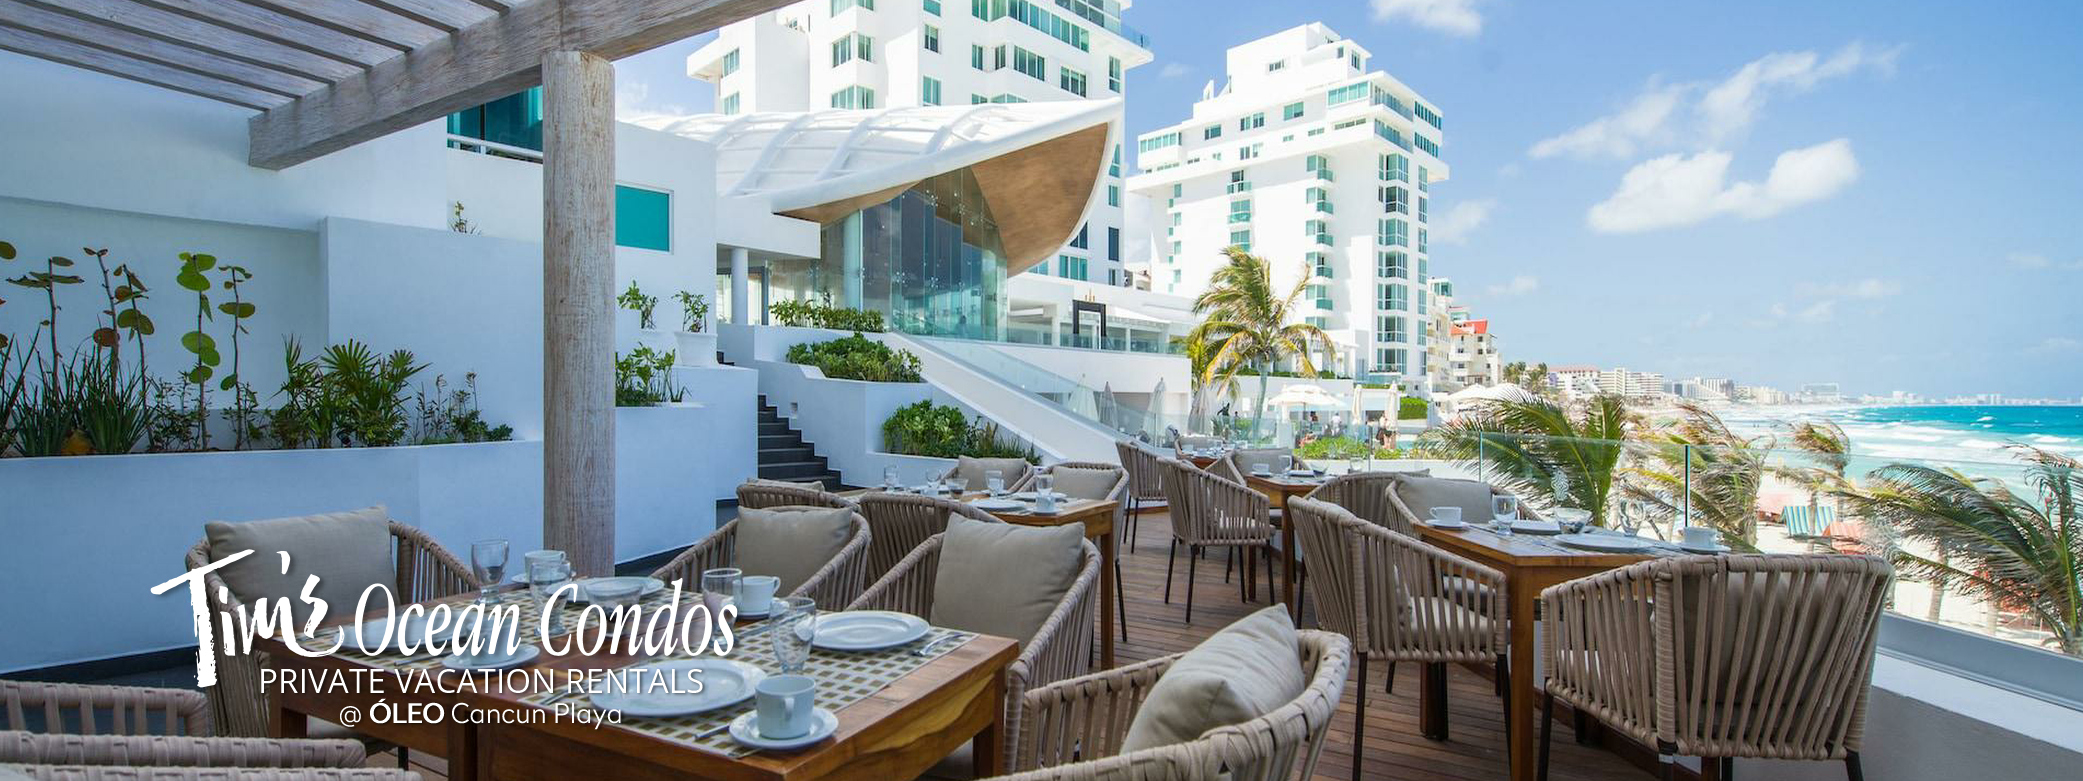 ÓLEO Cancún Playa All Inclusive - Azul Restaurant 2